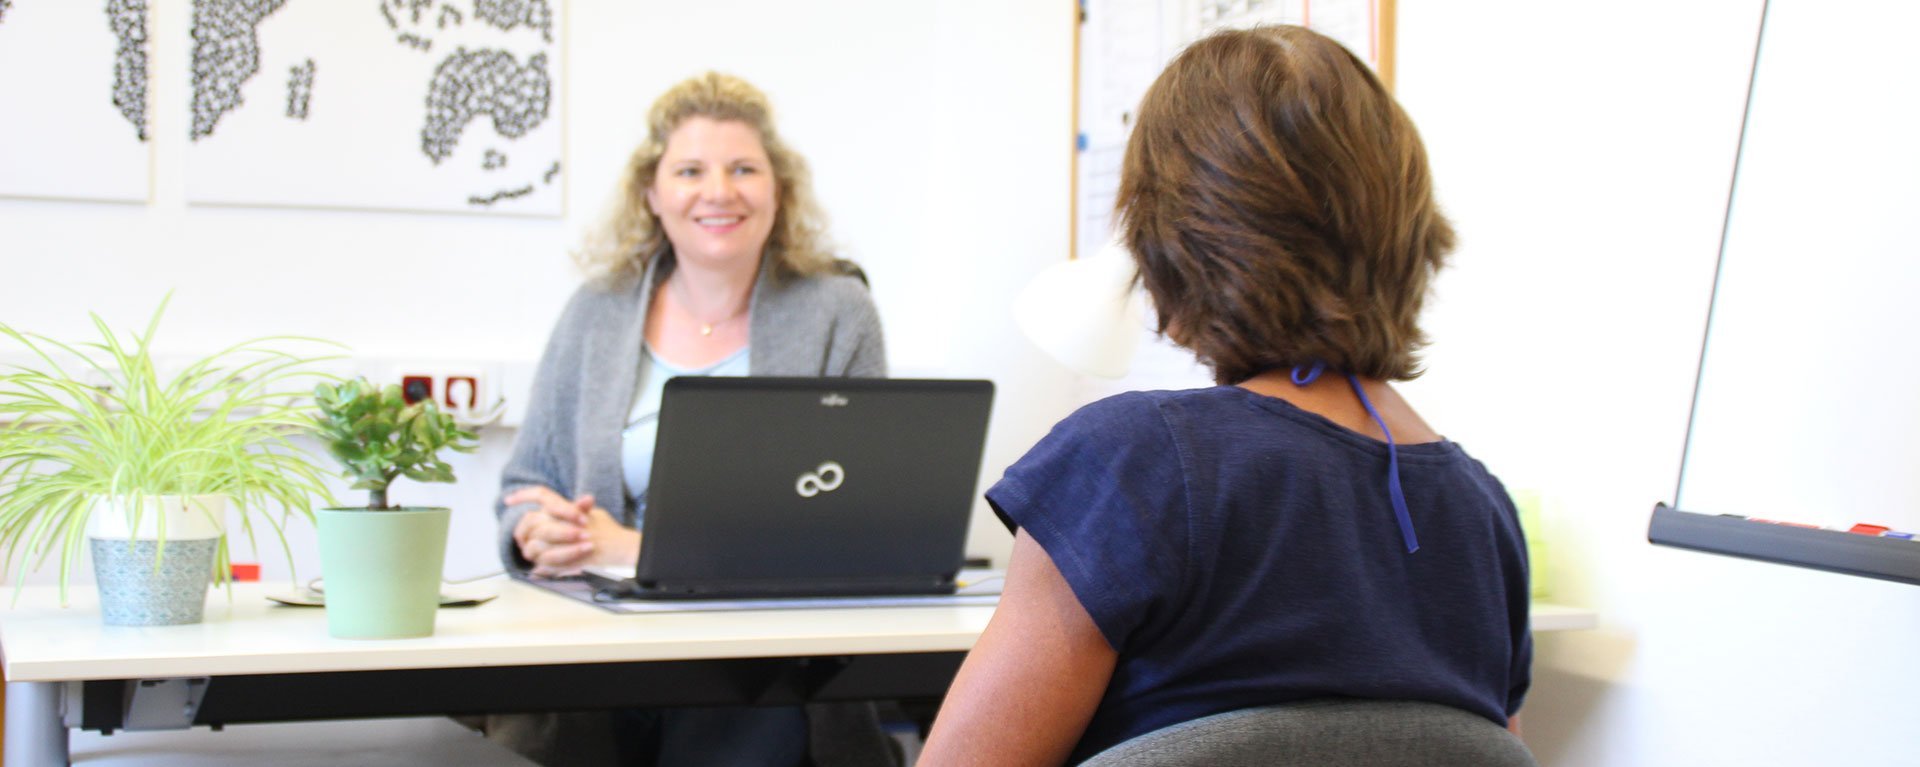 Besprechung im Büro: eine Frau am Schreibtisch mit Laptop hört einer anderen, ihr gegenüber sitzenden Frau zu